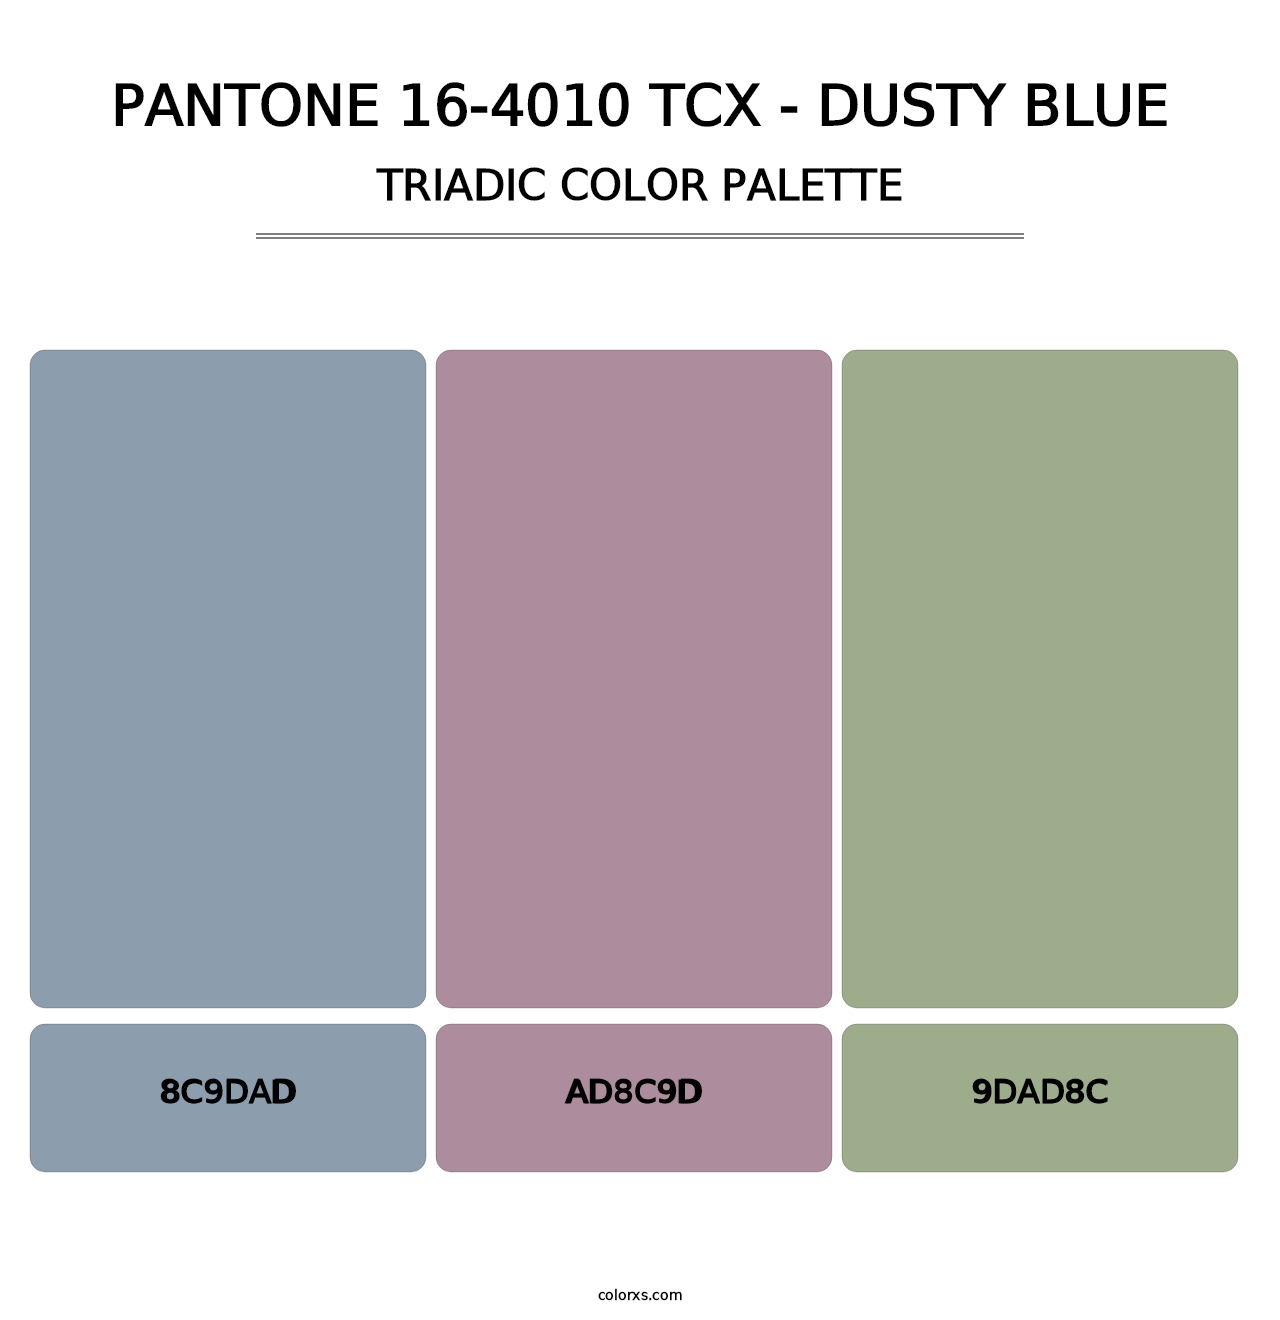 PANTONE 16-4010 TCX - Dusty Blue - Triadic Color Palette